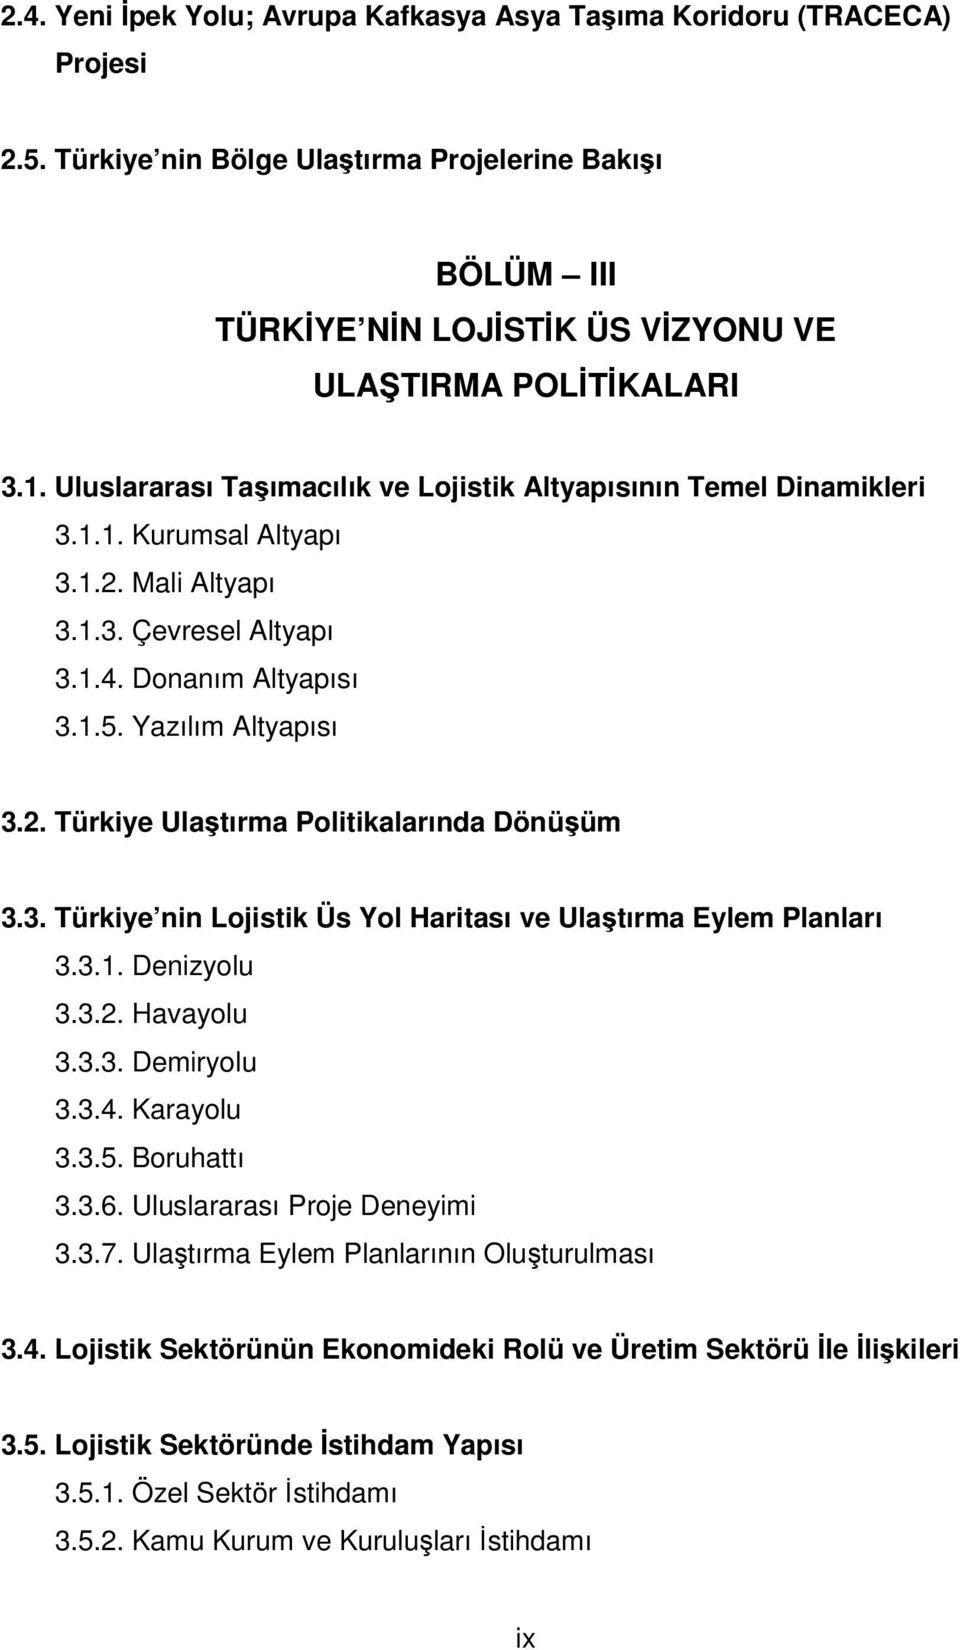 3. Türkiye nin Lojistik Üs Yol Haritası ve Ulaştırma Eylem Planları 3.3.1. Denizyolu 3.3.2. Havayolu 3.3.3. Demiryolu 3.3.4. Karayolu 3.3.5. Boruhattı 3.3.6. Uluslararası Proje Deneyimi 3.3.7.